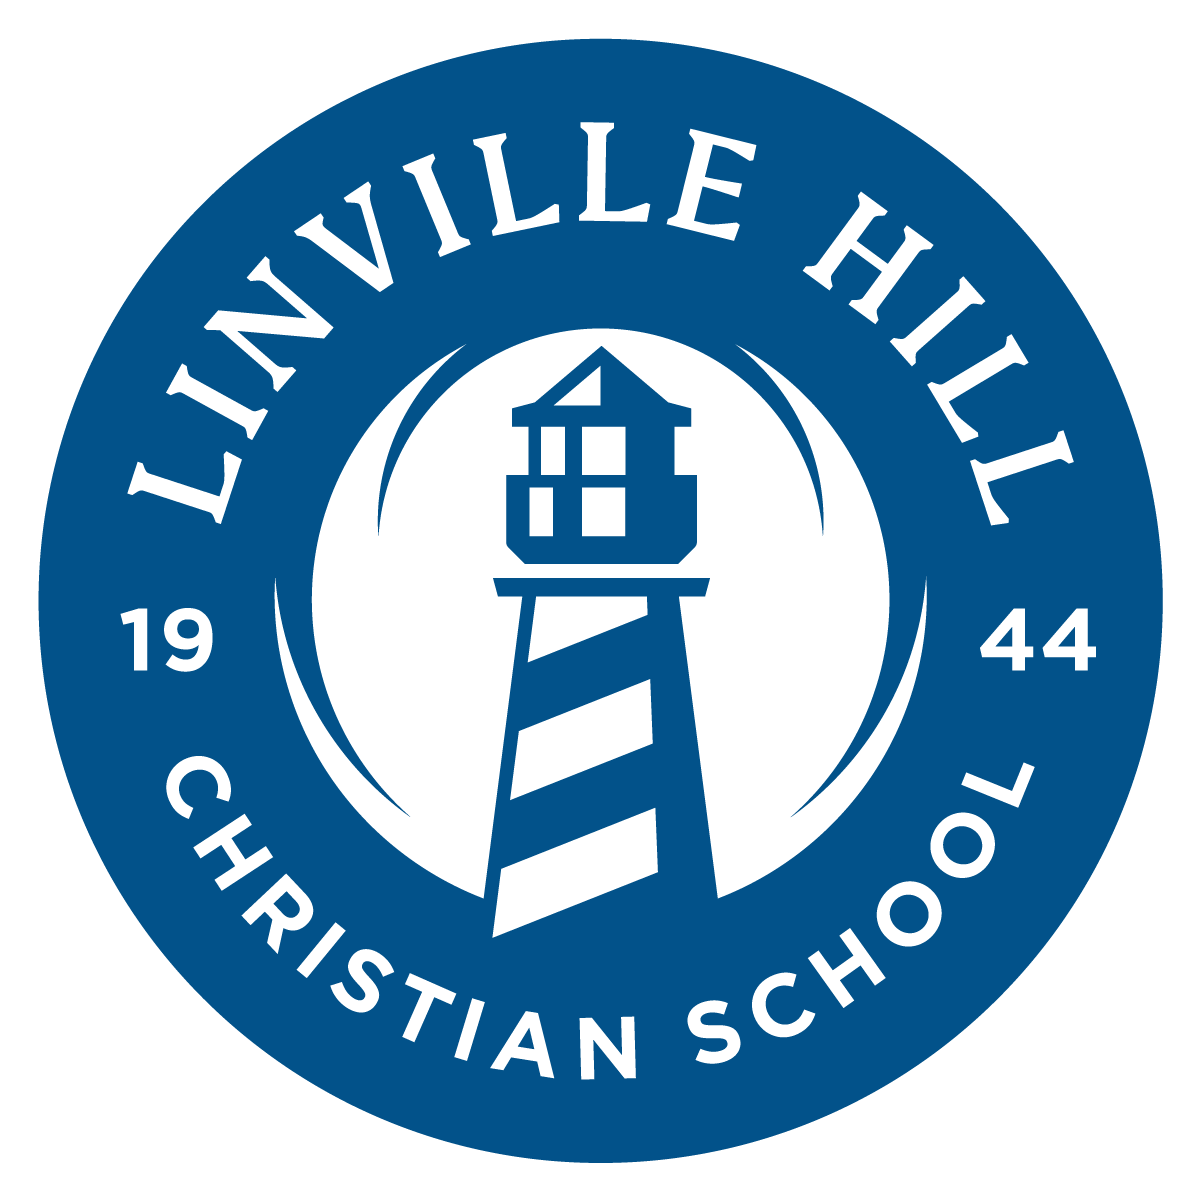 Linville Hill Christian School